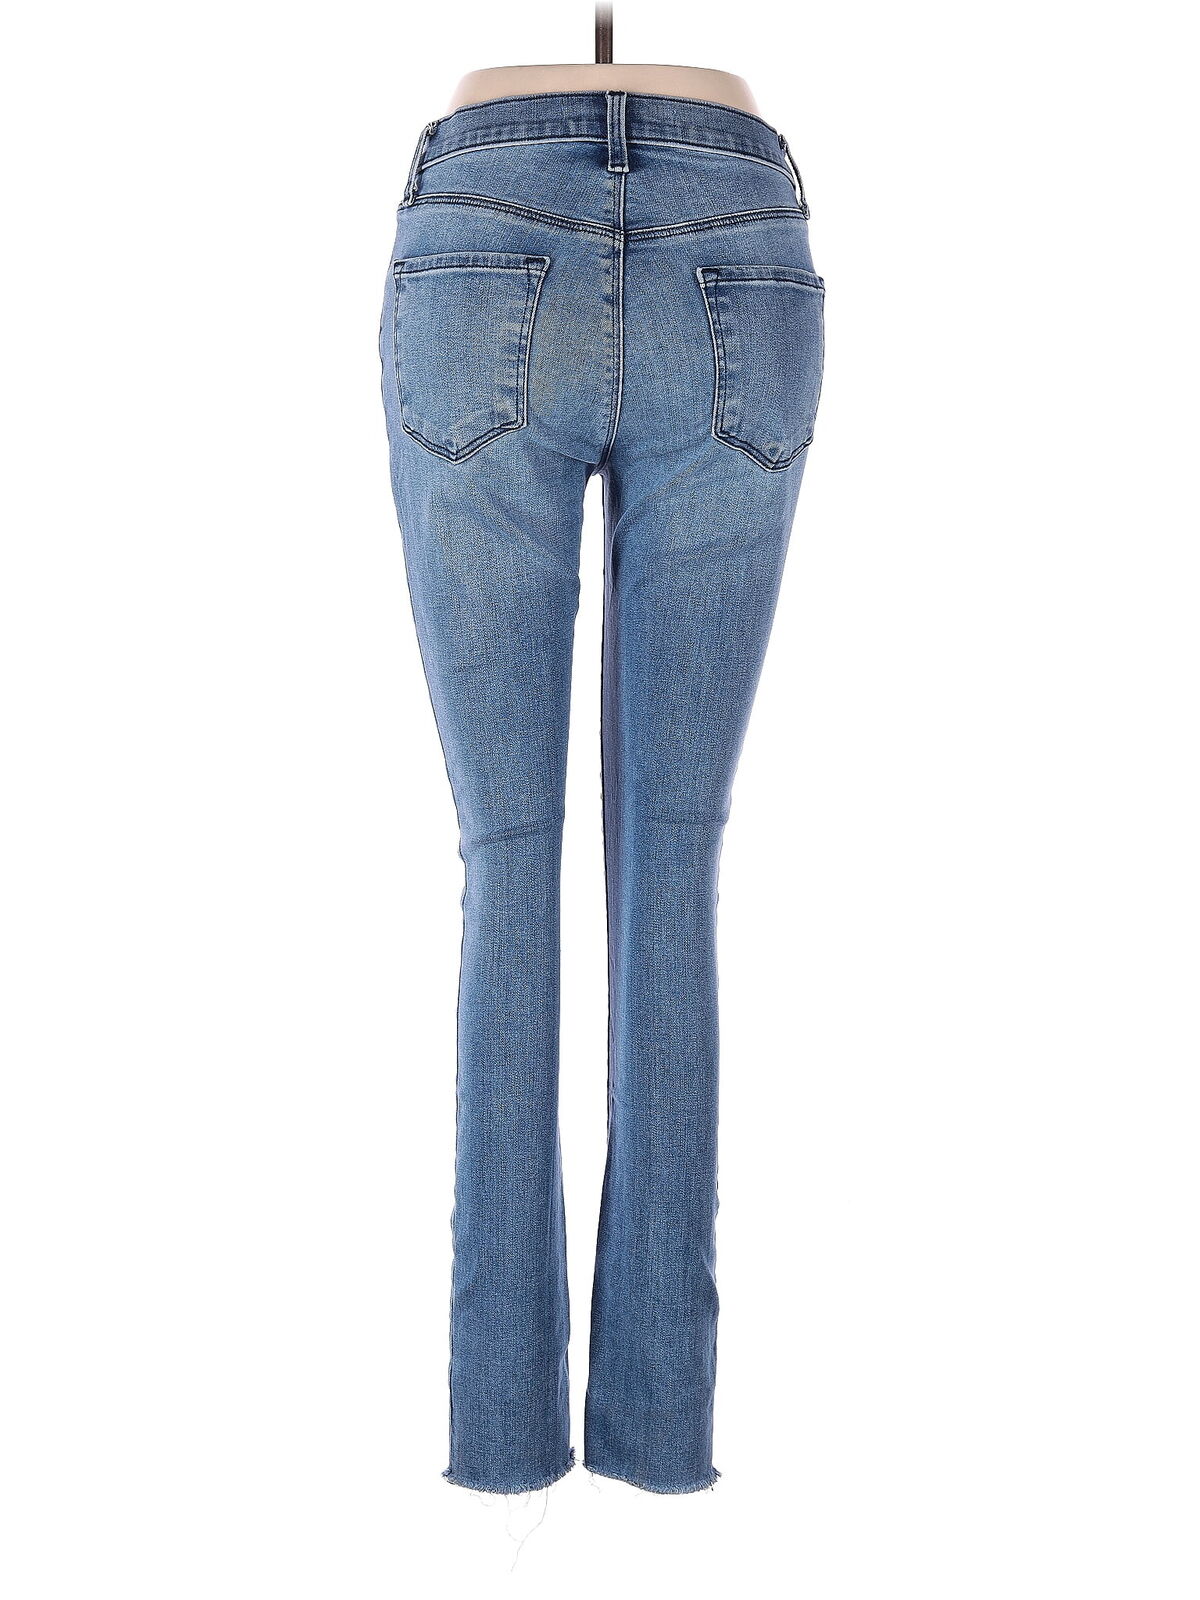 J Brand Women Blue Jeans 27W - image 2